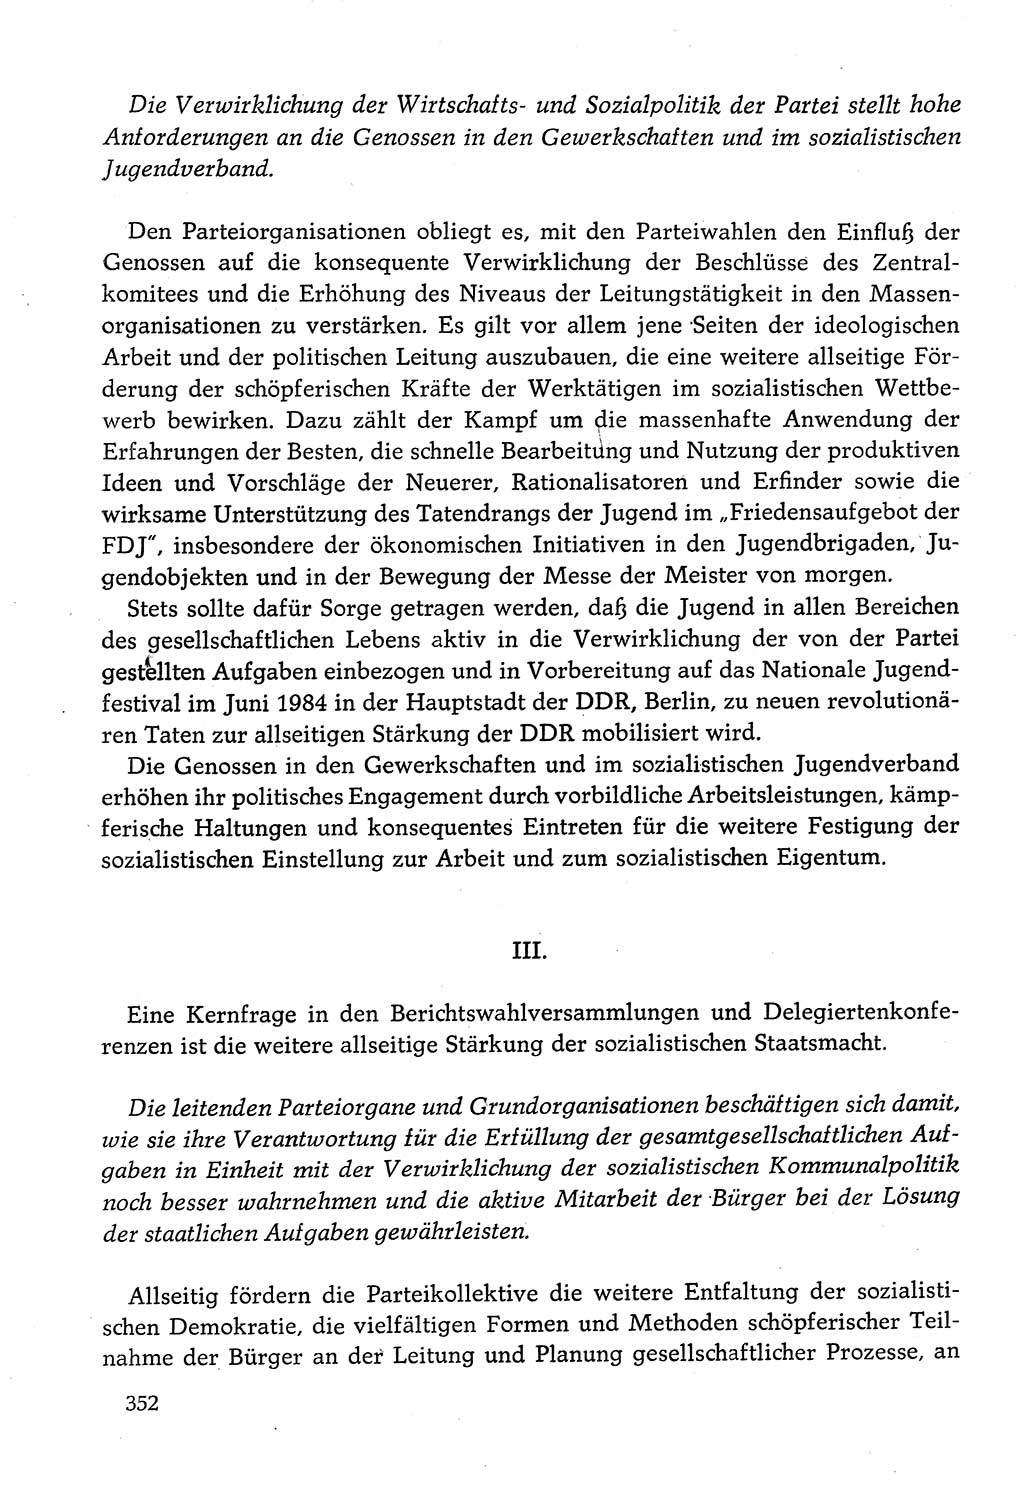 Dokumente der Sozialistischen Einheitspartei Deutschlands (SED) [Deutsche Demokratische Republik (DDR)] 1982-1983, Seite 352 (Dok. SED DDR 1982-1983, S. 352)